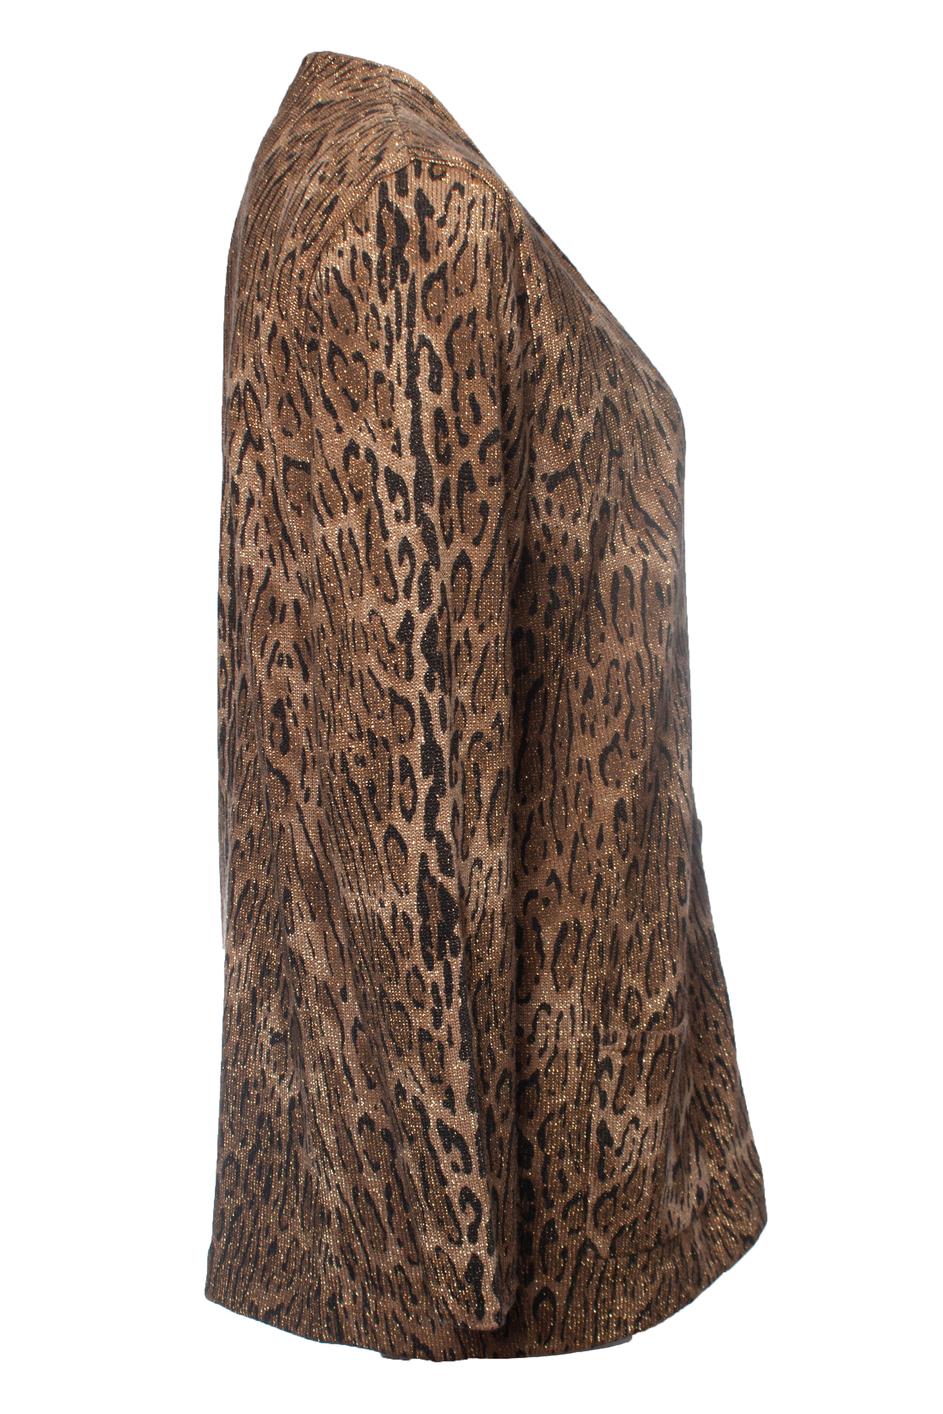 Saint Laurent, Leopard print lame wool cardigan. The item is new - unworn.

• CONDITION: new - unworn 

• SIZE: M 

• MEASUREMENTS: length 72 cm, width 54 cm, waist 50 cm, shoulder width 41 cm,

arm length 60 cm

• MATERIAL: 80% wool 11% lurex 9%